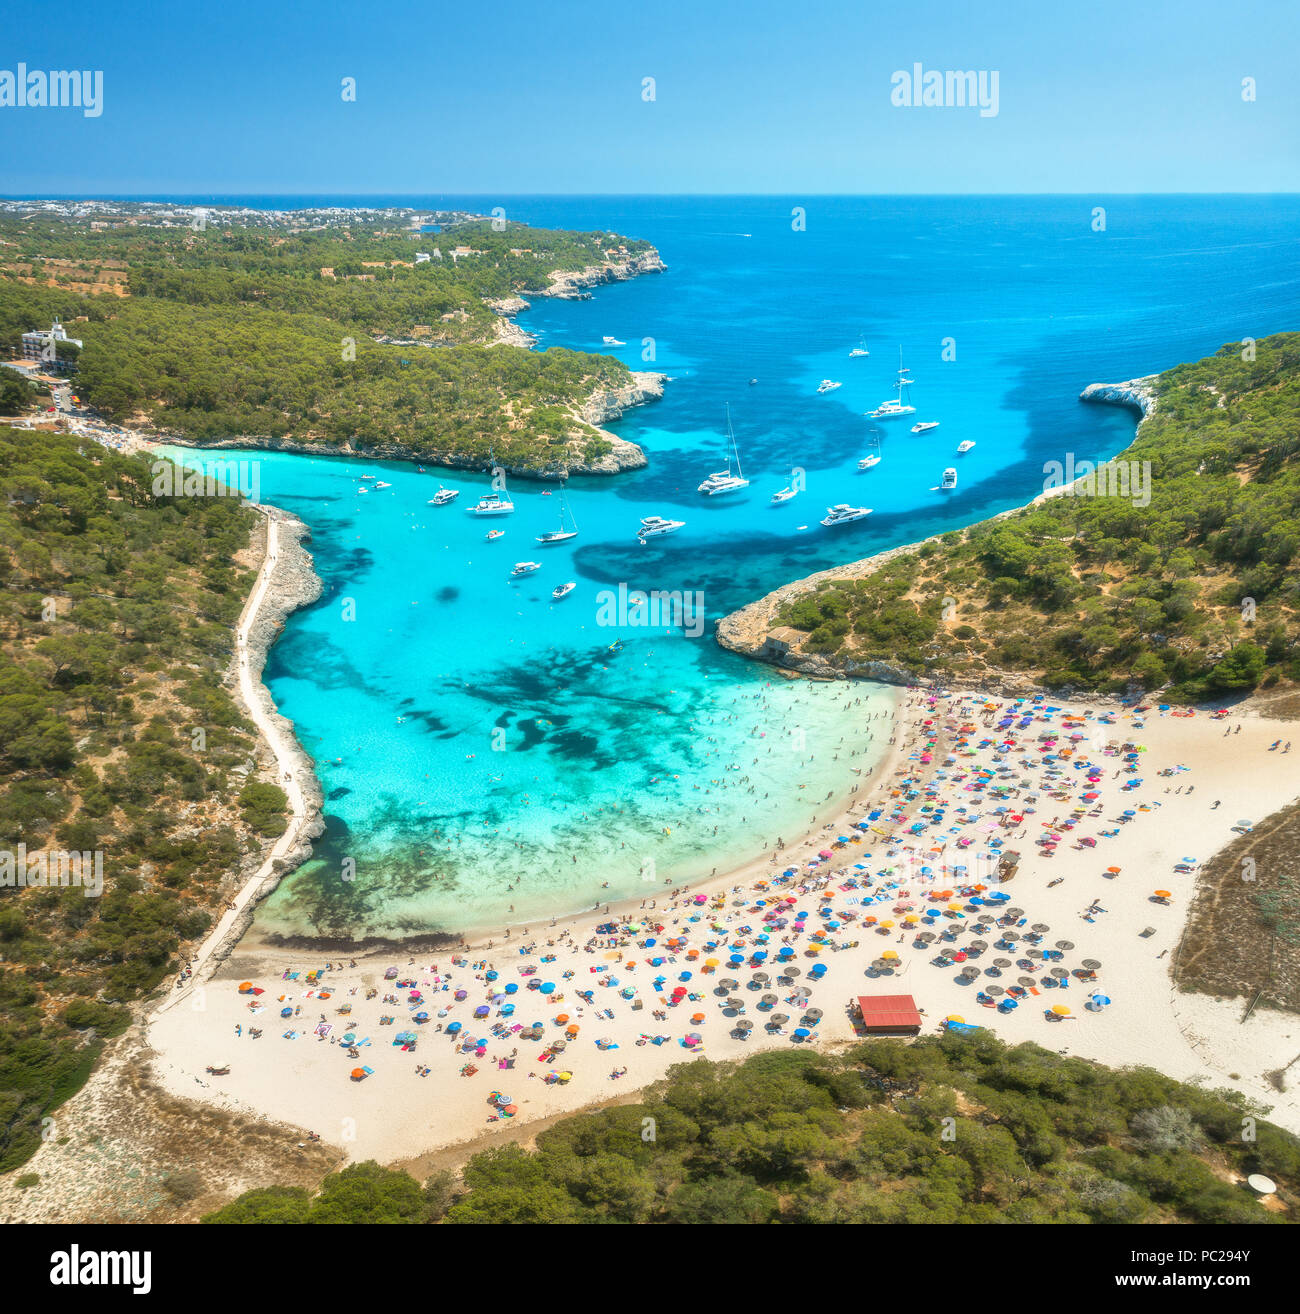 Vista aerea della spiaggia di sabbia fine attrezzata con ombrelloni colorati, persone, yacht e barche in mare baia con acqua blu, foresta nella mattina di sole. Viaggio estivo in Mal Foto Stock